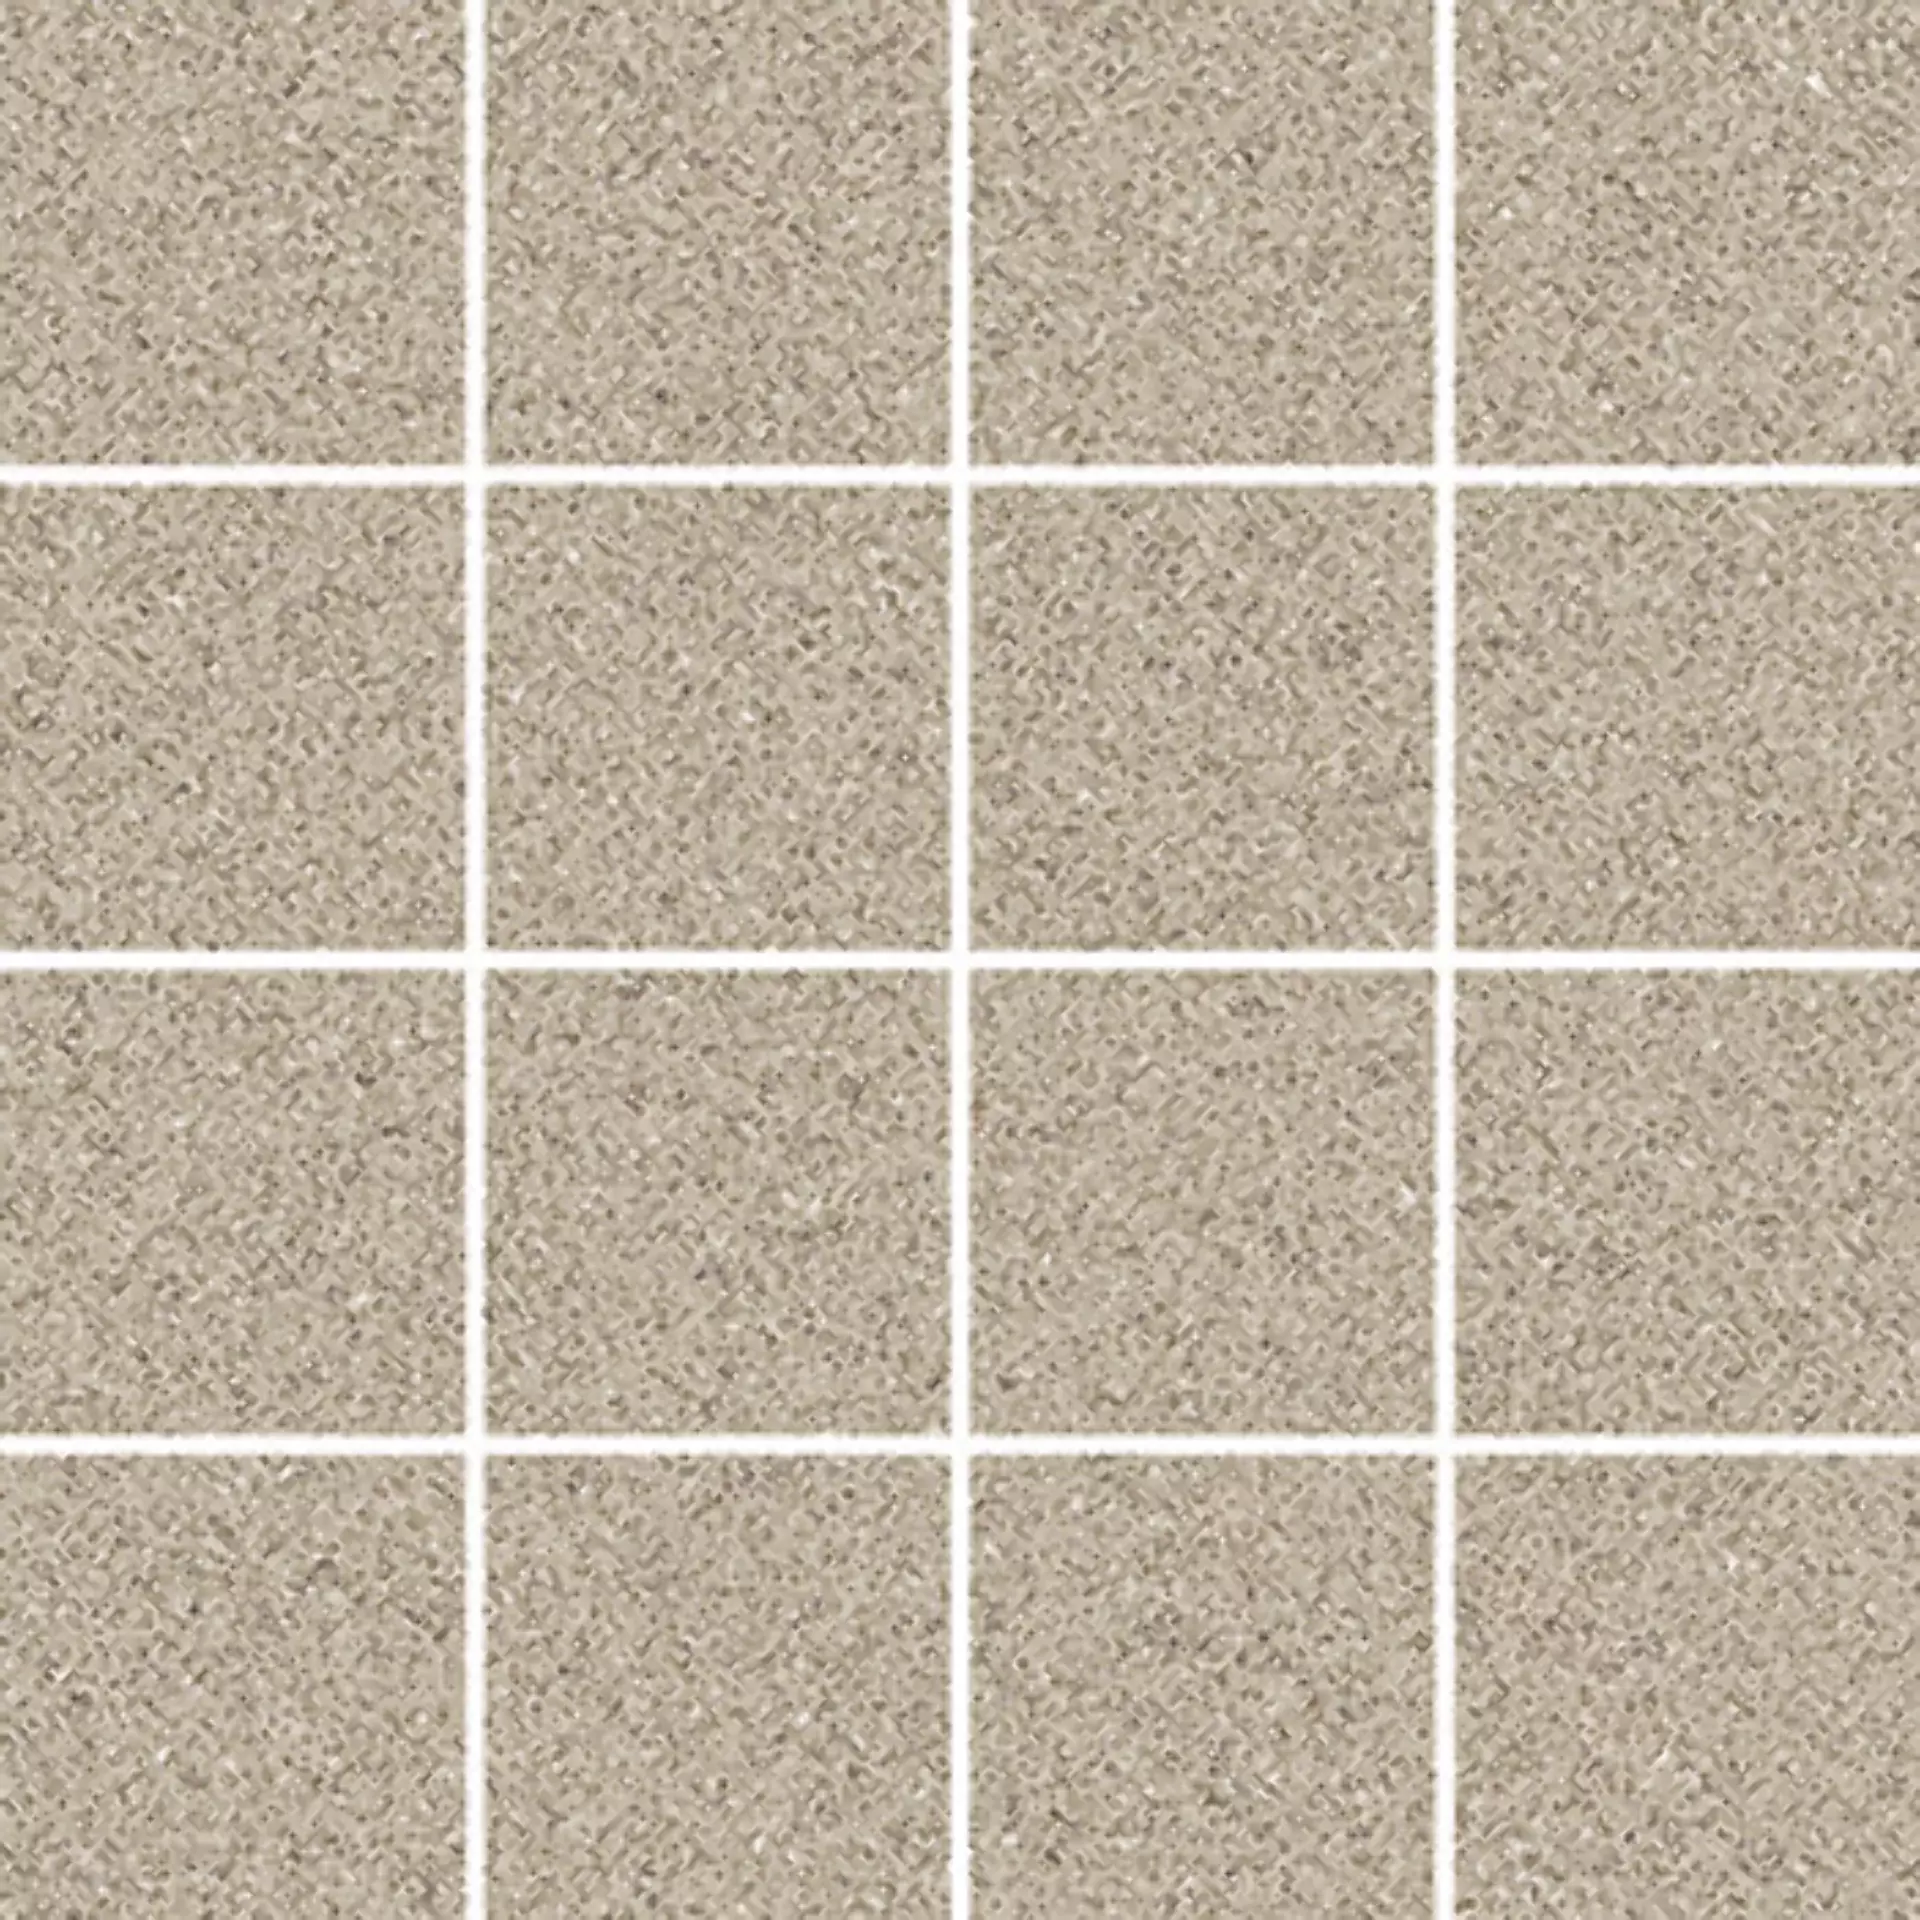 Wandfliese,Bodenfliese Villeroy & Boch Pure Line 2.0 Sand Beige Matt Sand Beige 2013-UL70 matt 7,5x7,5cm Mosaik (7,5x7,5) rektifiziert 12mm